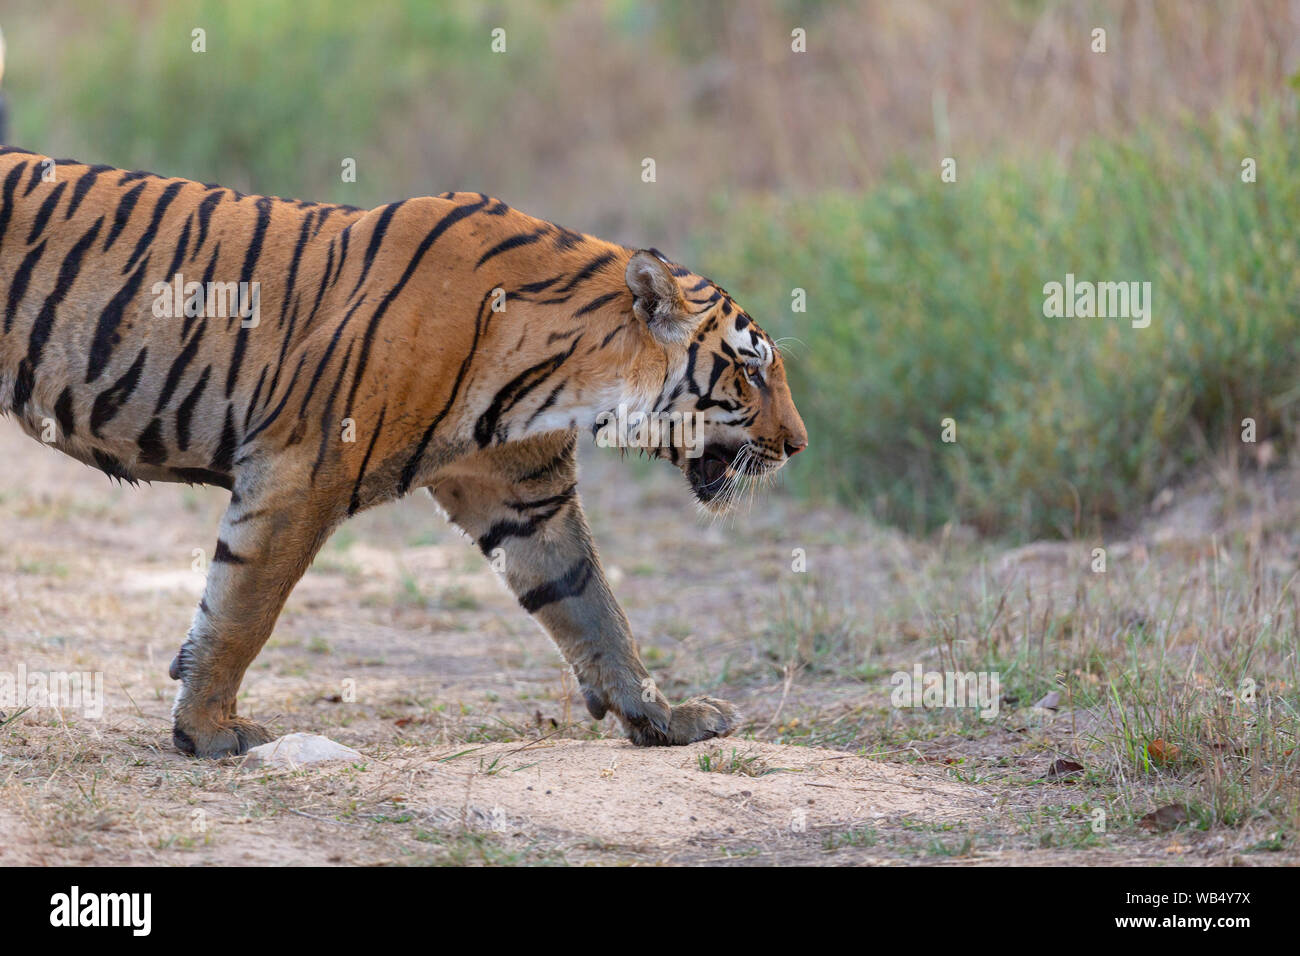 Wild Royal Bengal Tiger or Panthera Tigris Tigris roaming in Kanha Tiger Reserve Madhya Pradesh India Stock Photo